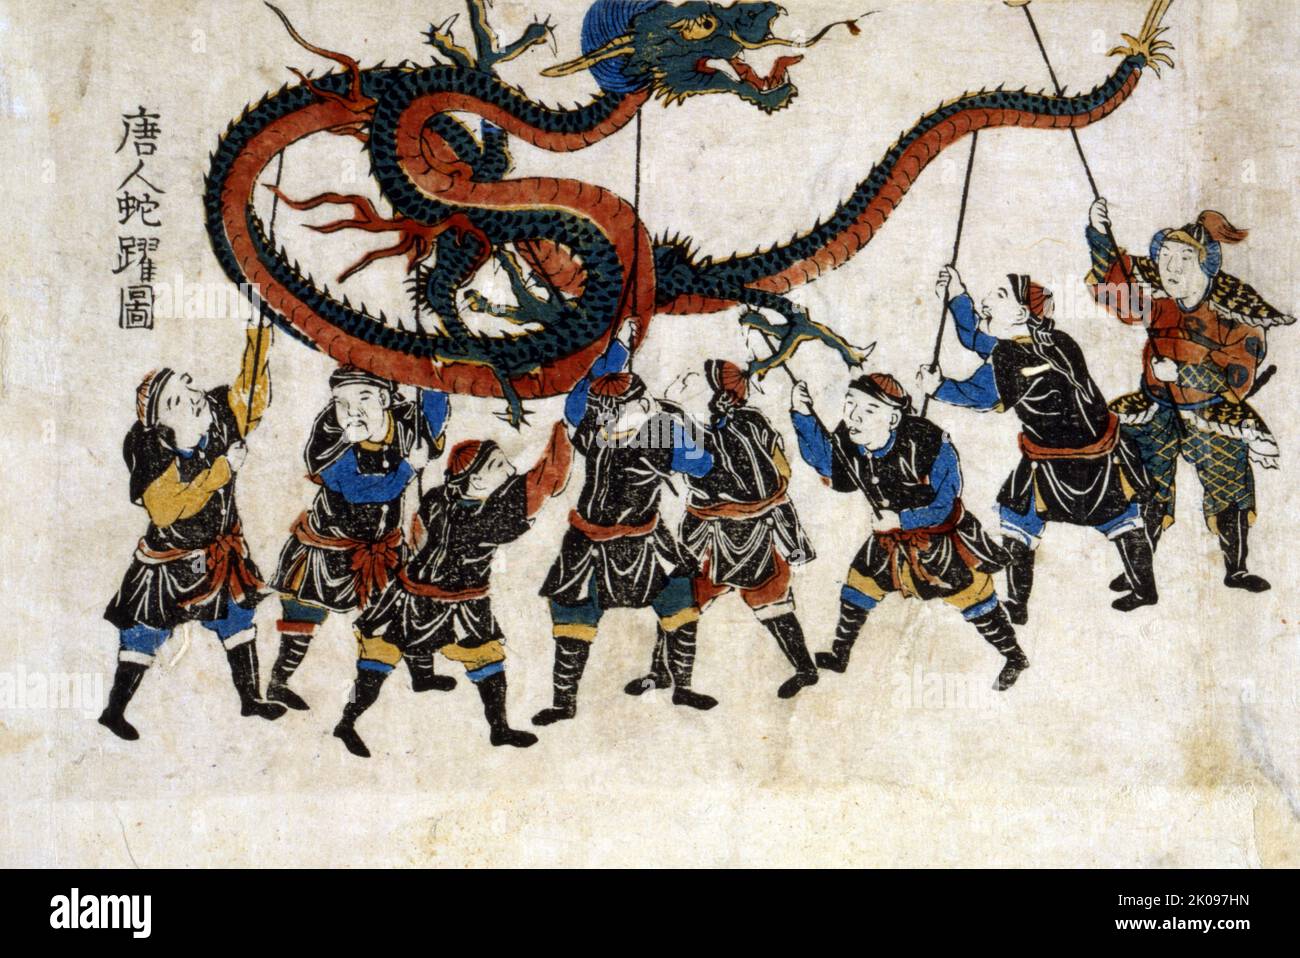 Tojin ja-odori no zu, chinesischer Drachentanz. Der japanische Druck zeigt acht Männer, die einen Drachen mit Stöcken für den Drachentanz hochhalten. Stockfoto